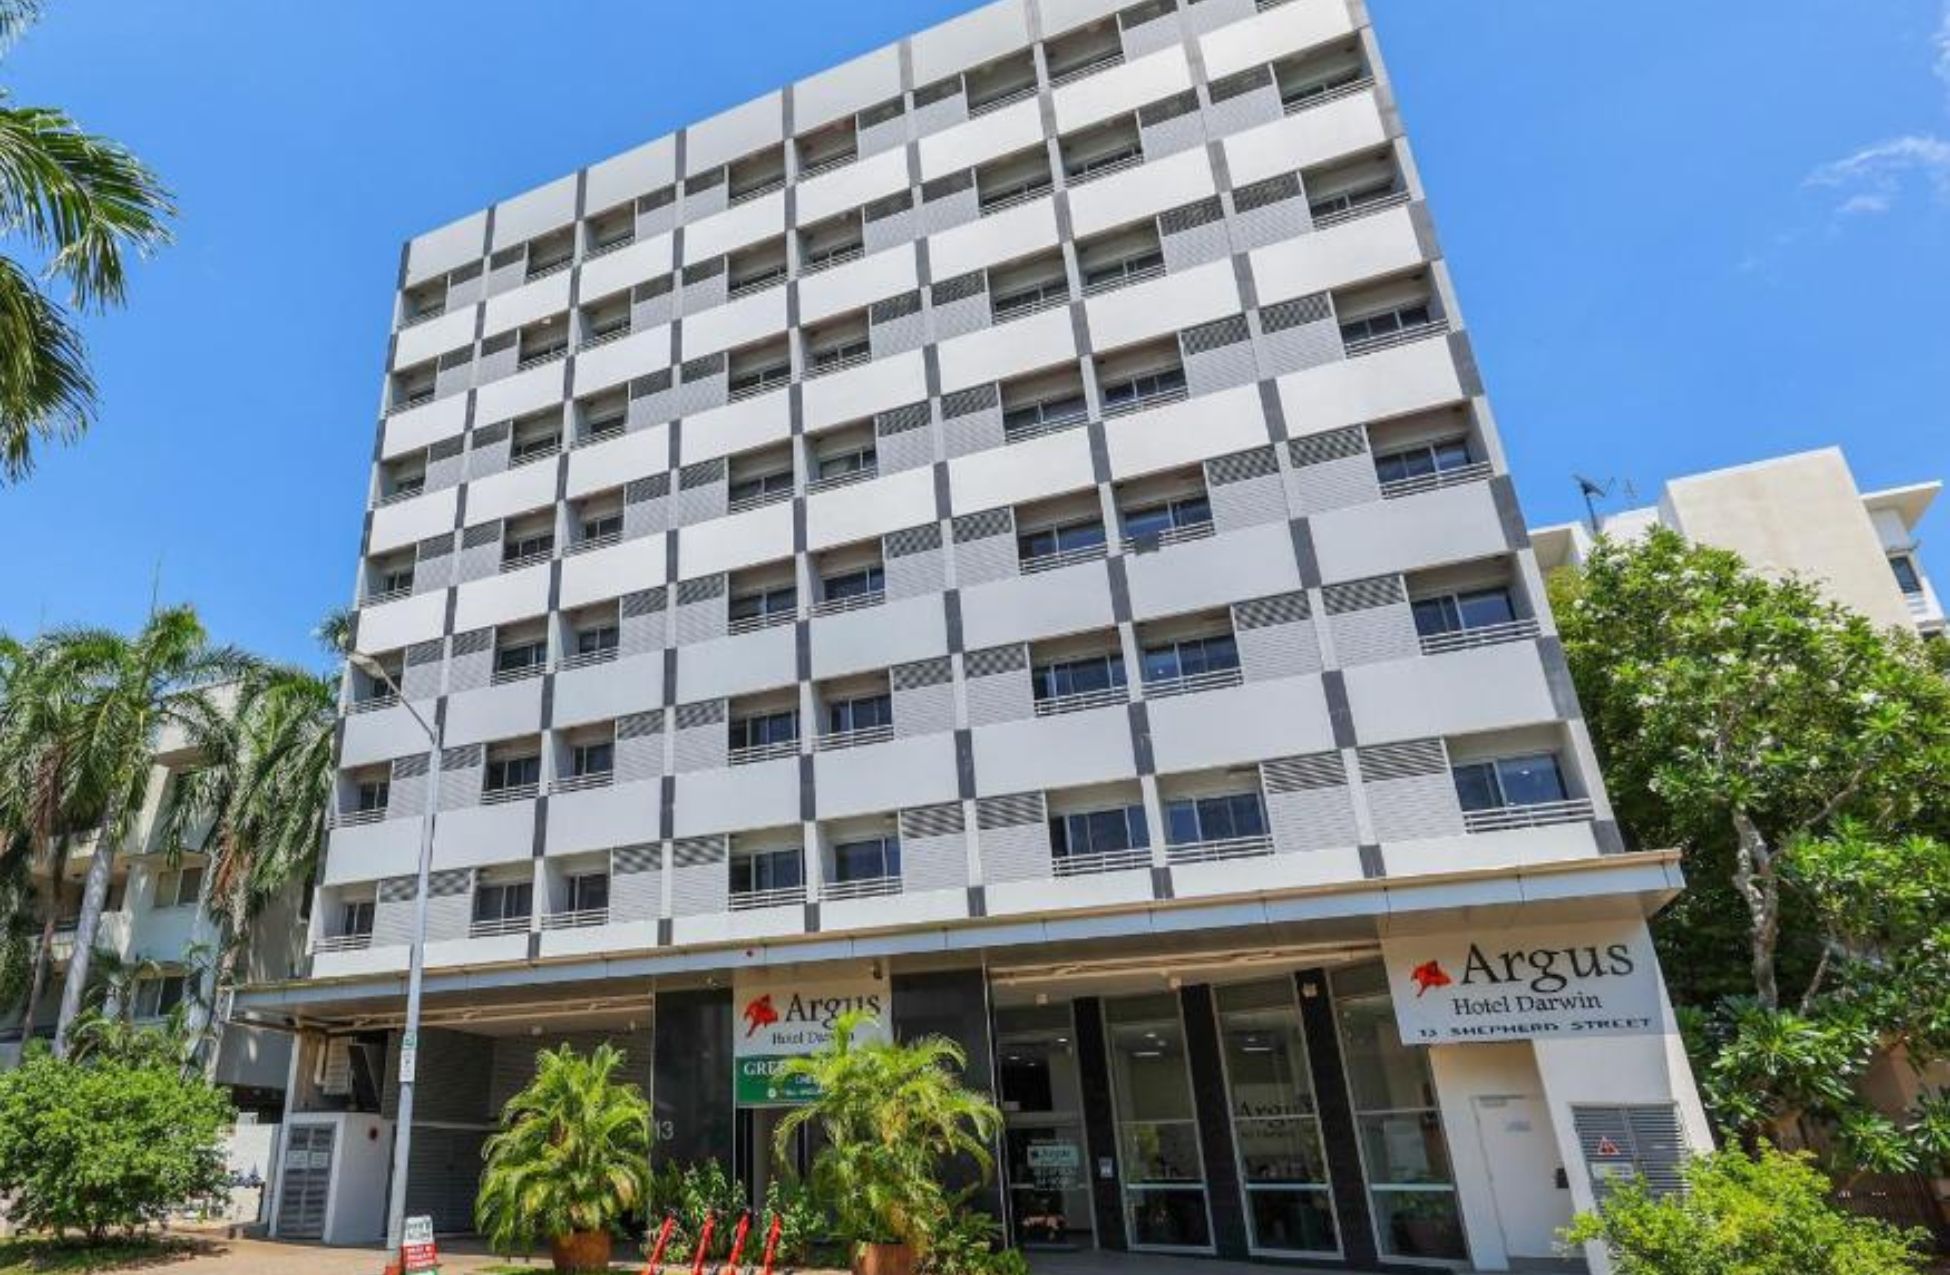 Argus Hotel Darwin - Best Hotels In Darwin